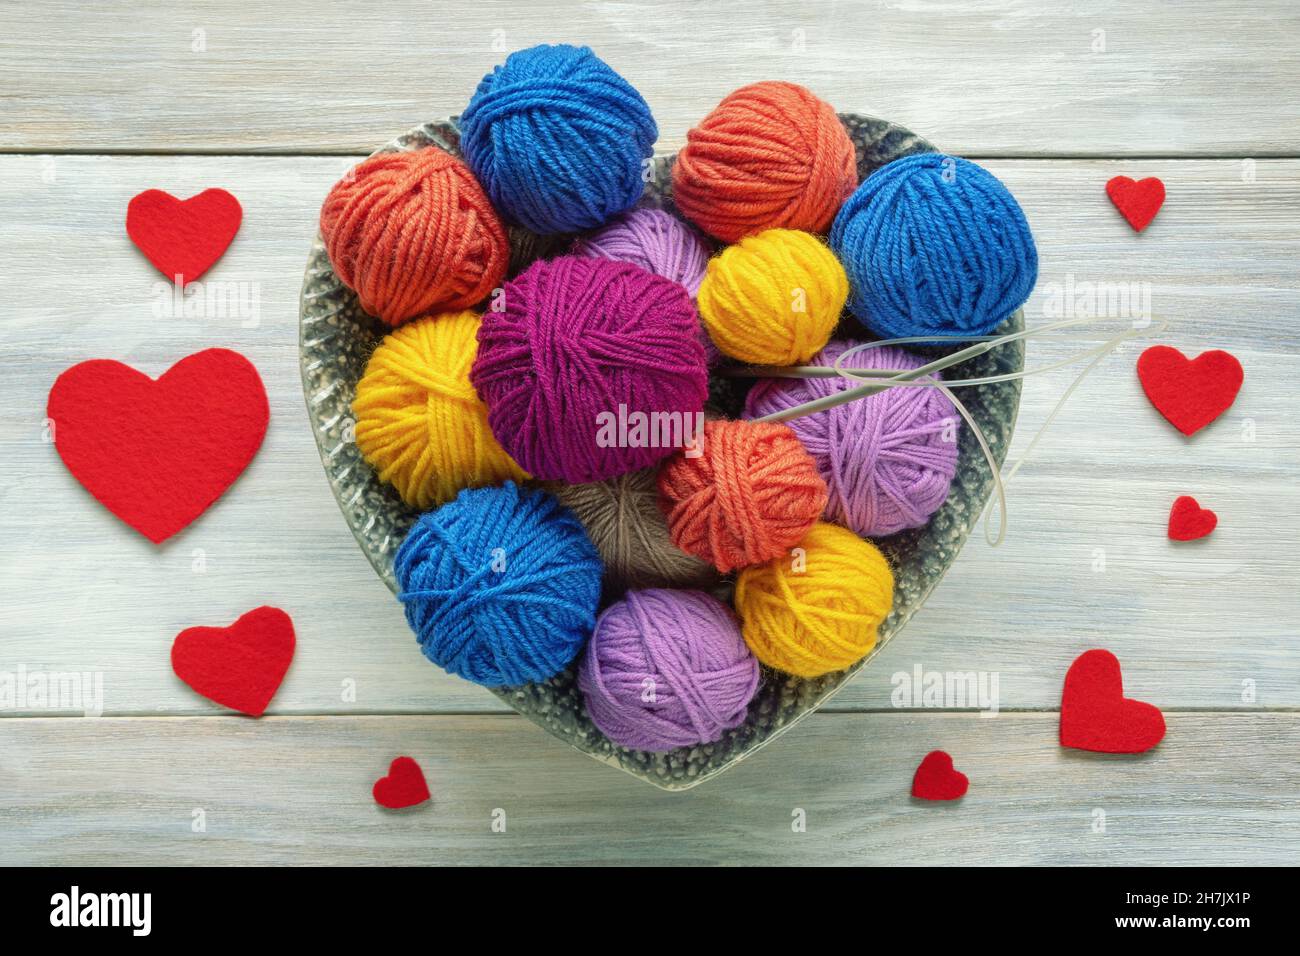 Tejido de lana en varios colores con ovillos y agujas foto de Stock